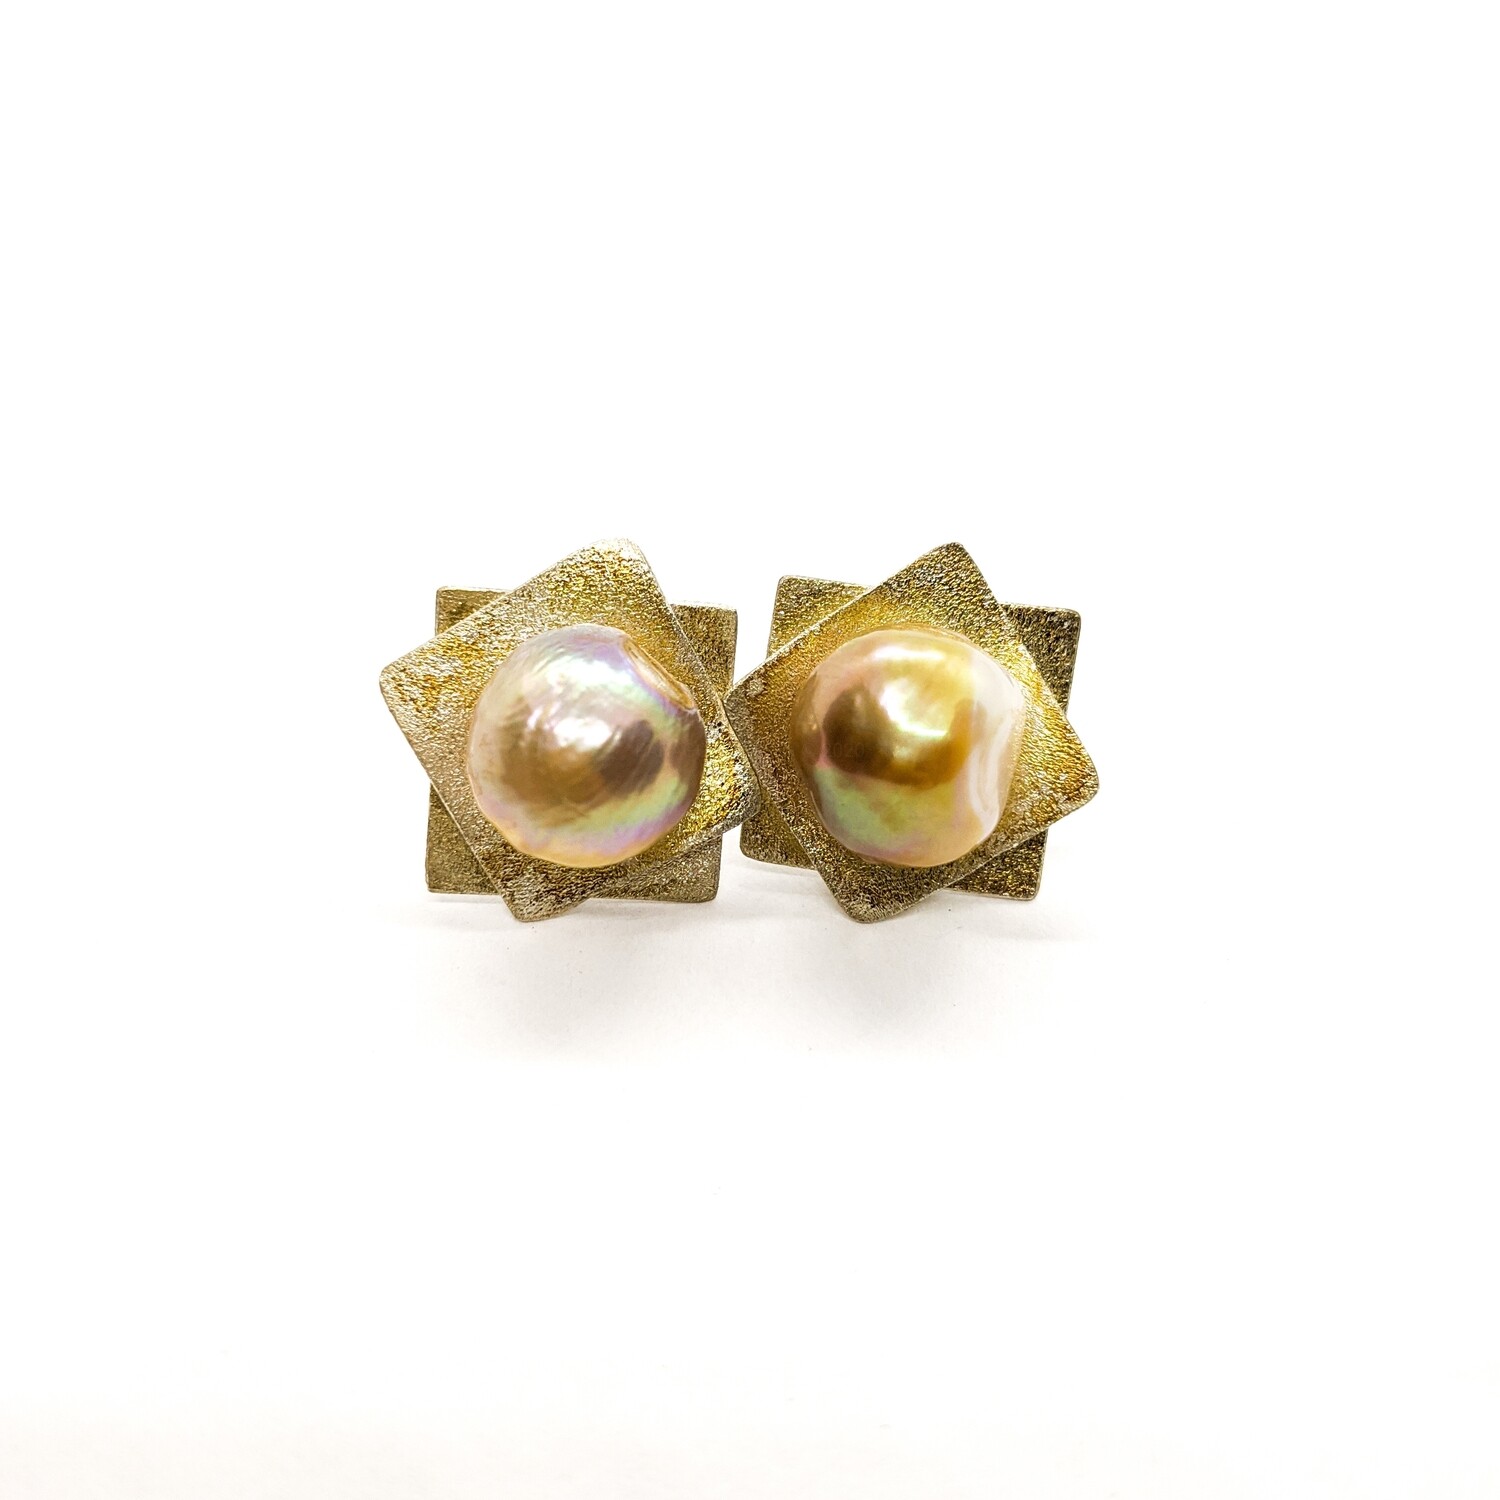 Kolczyki srebrne złocone z perła